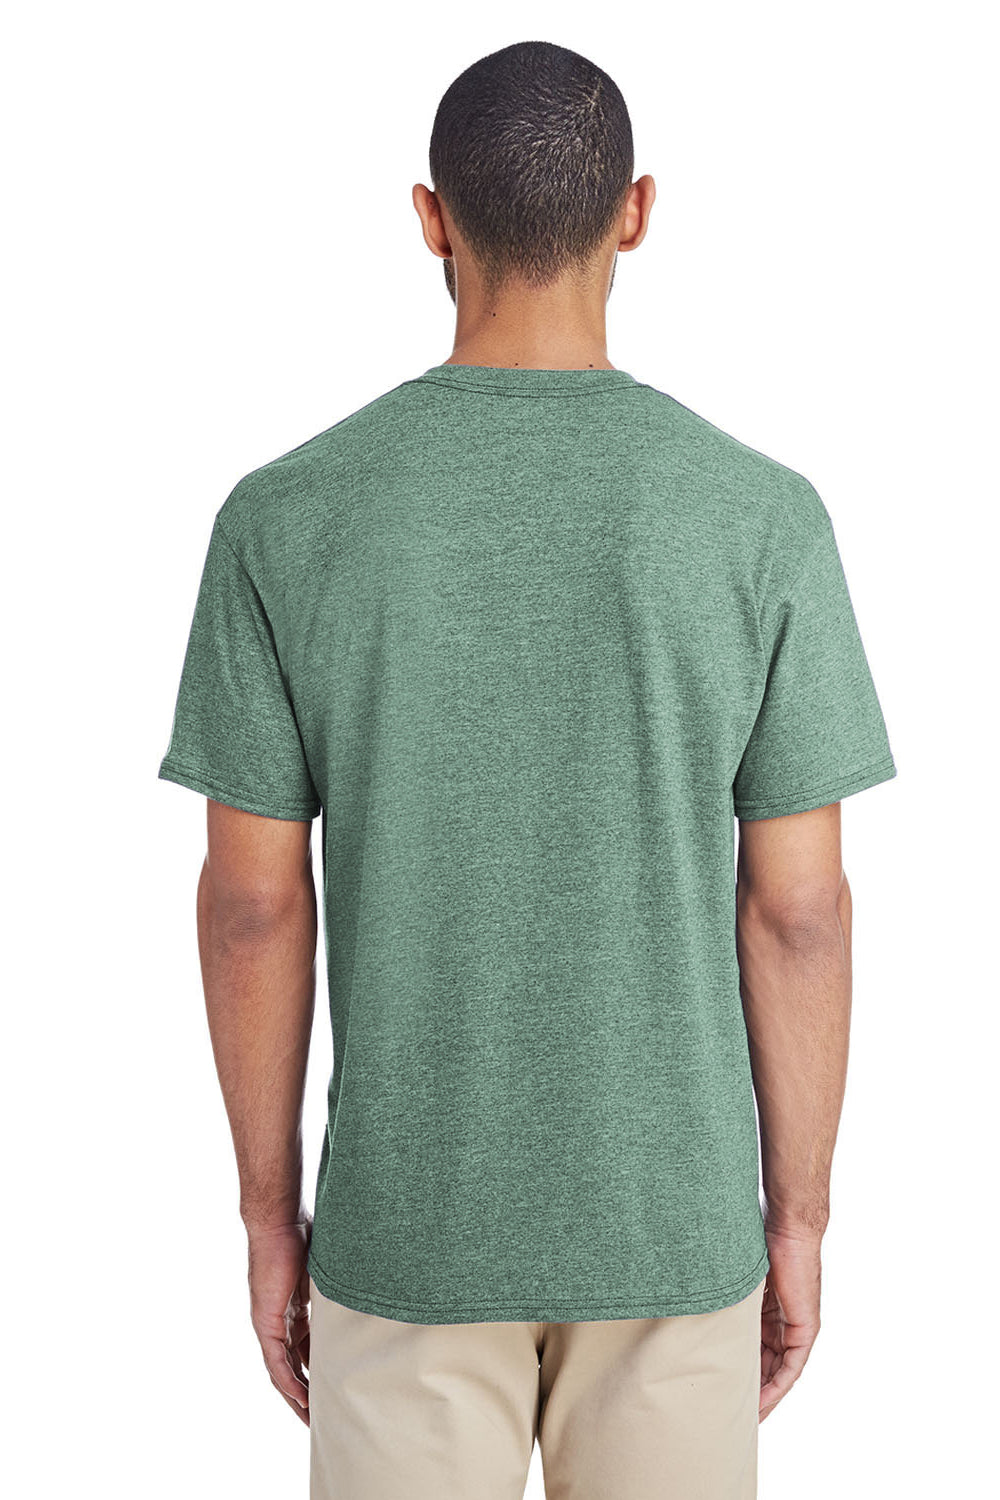 Gildan G800 Mens DryBlend Moisture Wicking Short Sleeve Crewneck T-Shirt Dark Green Back